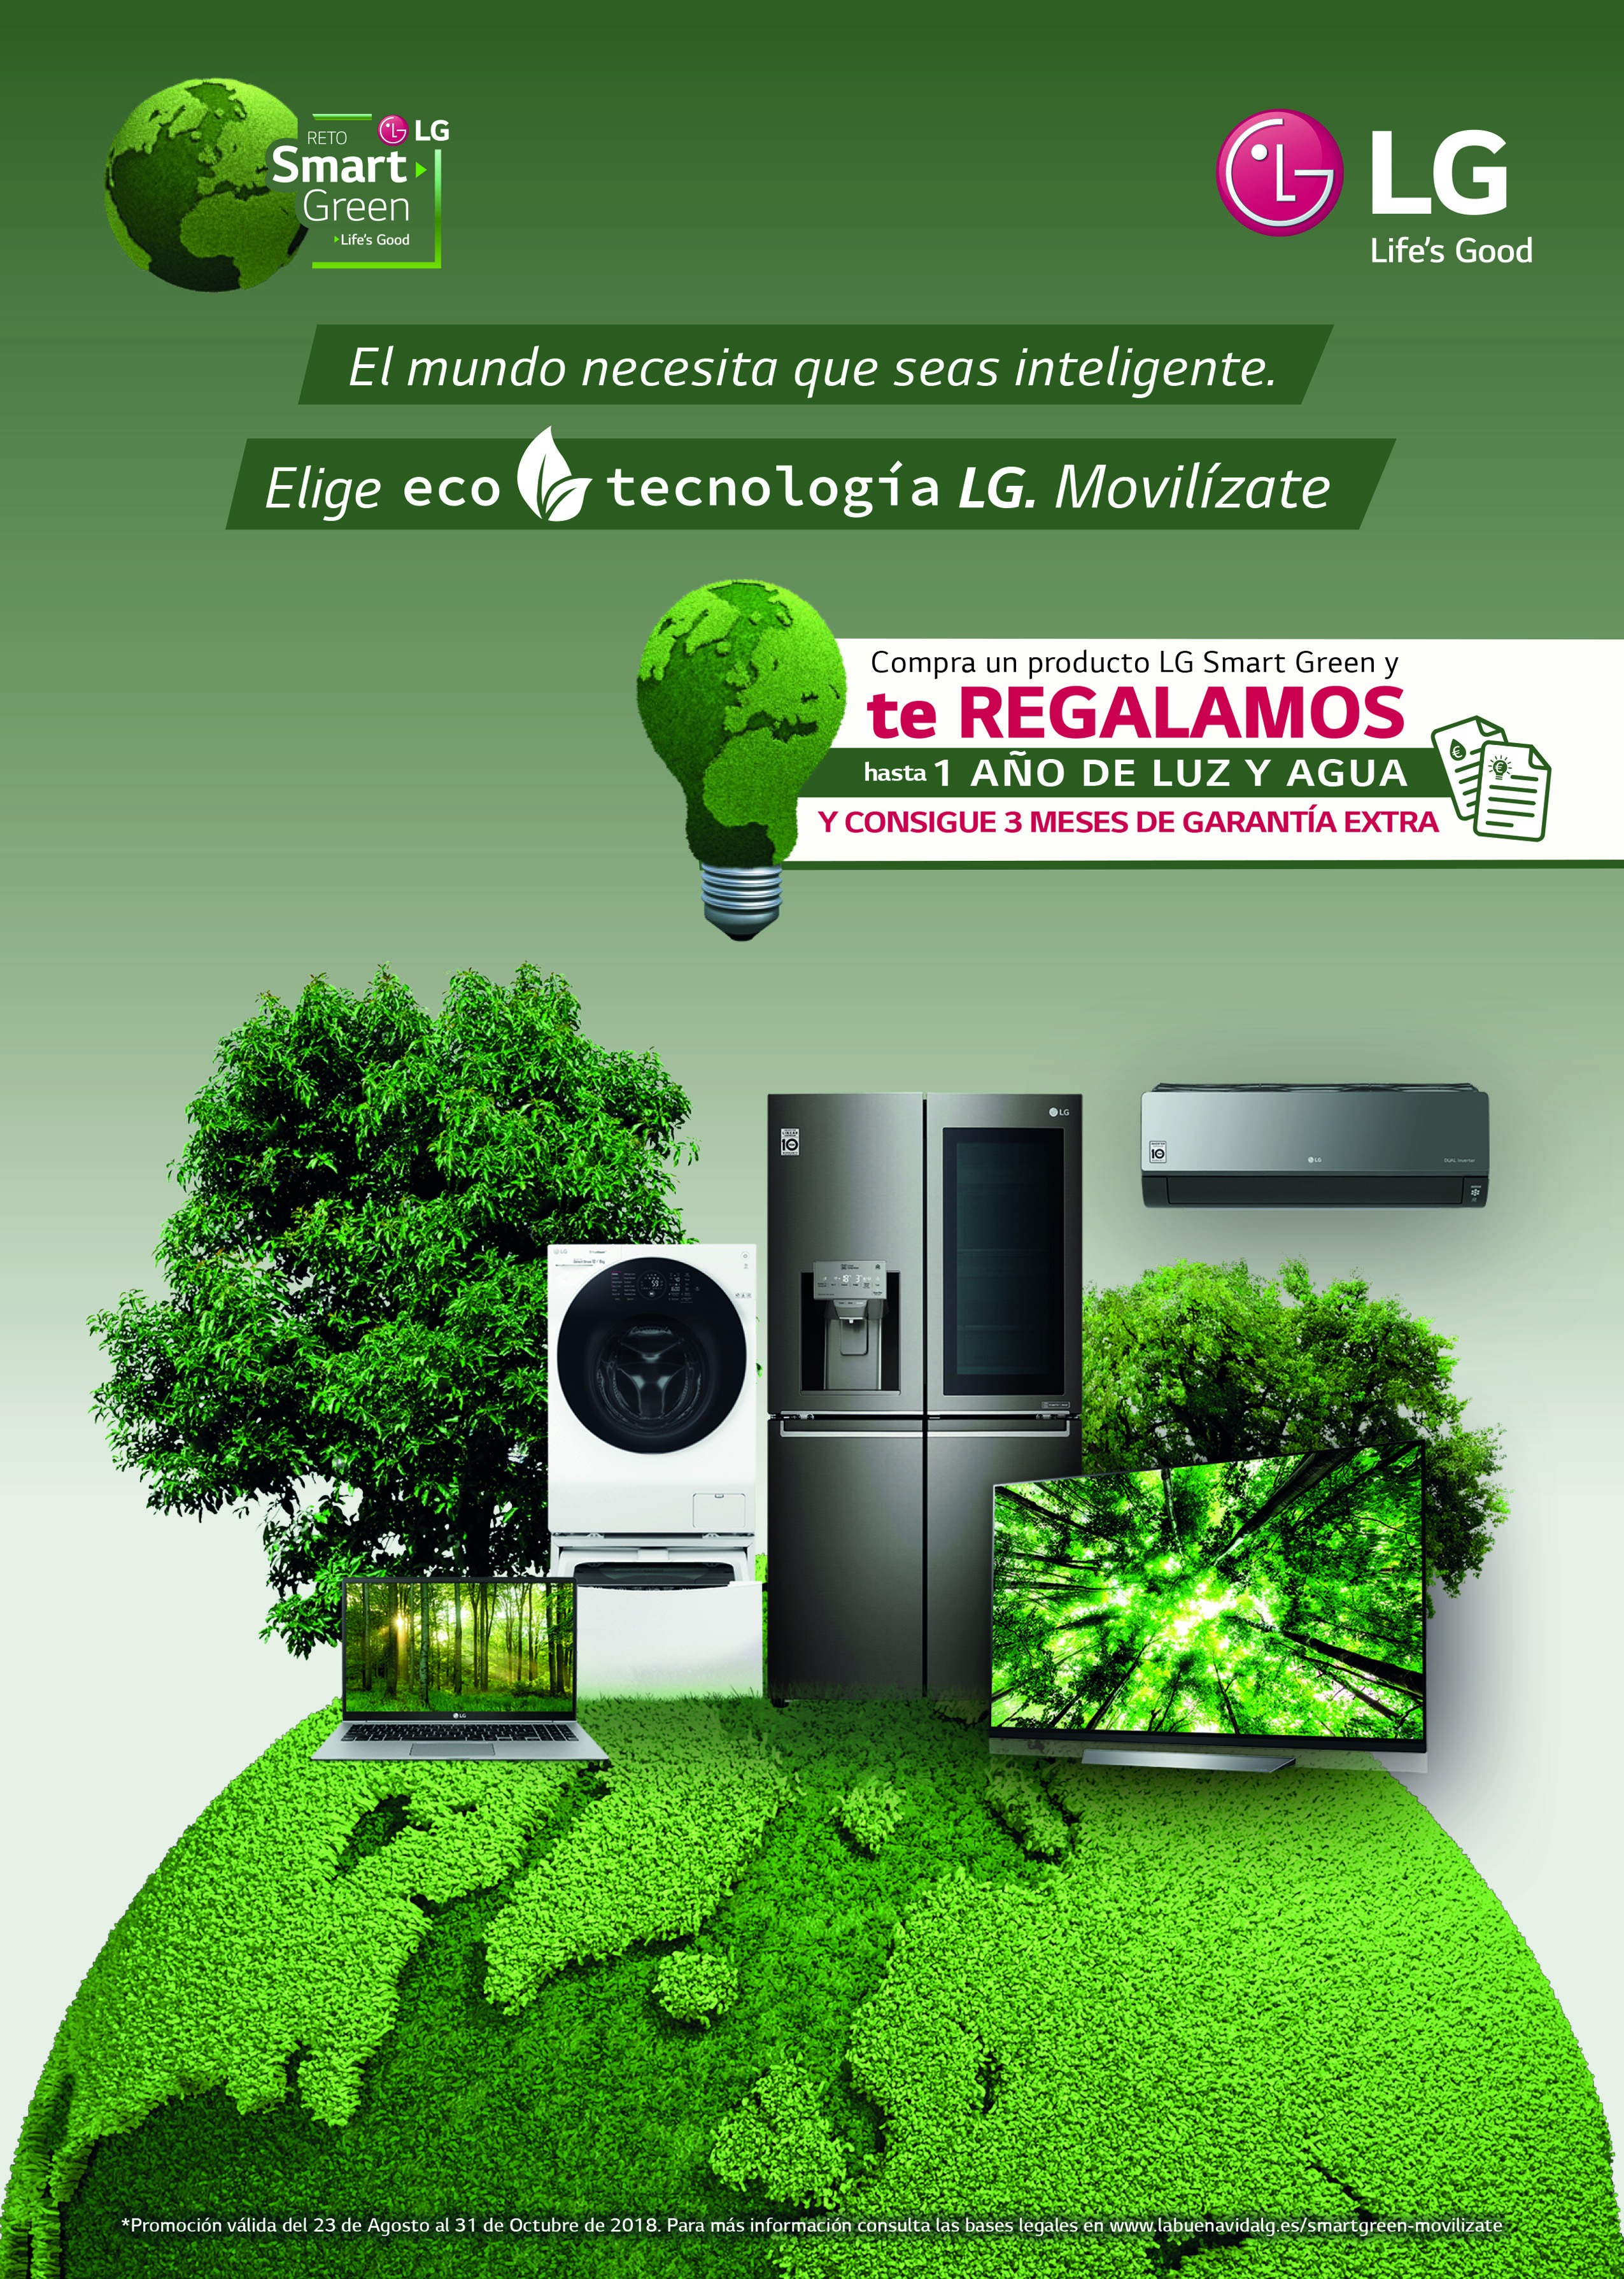 Compra un producto LG Smart Green y te regalamos hasta 1 año  de luz y agua